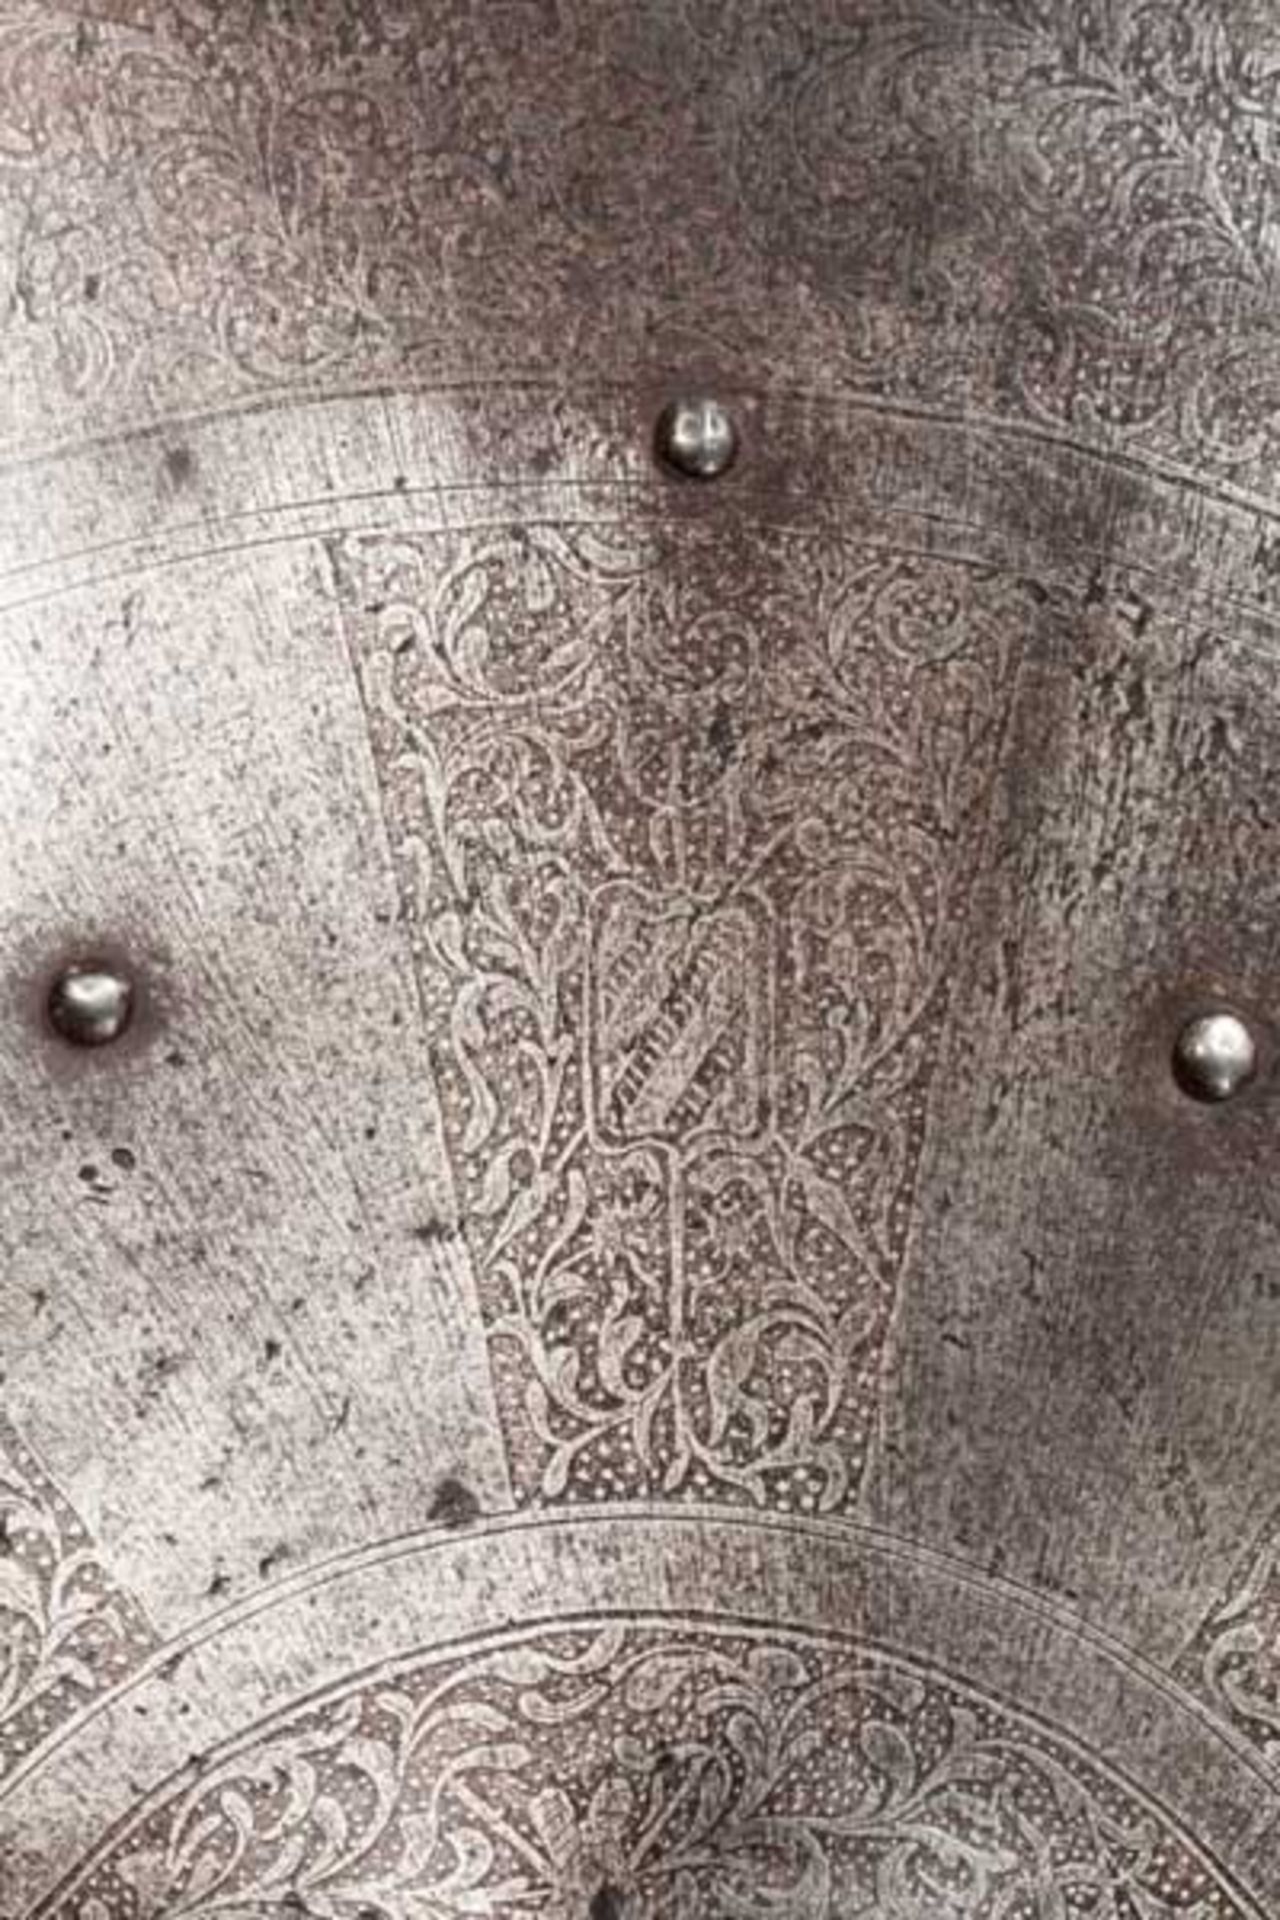 Geätzter Rundschild, deutsch um 1600 Leicht konischer, eiserner Rundschild mit gebördeltem, - Bild 2 aus 4